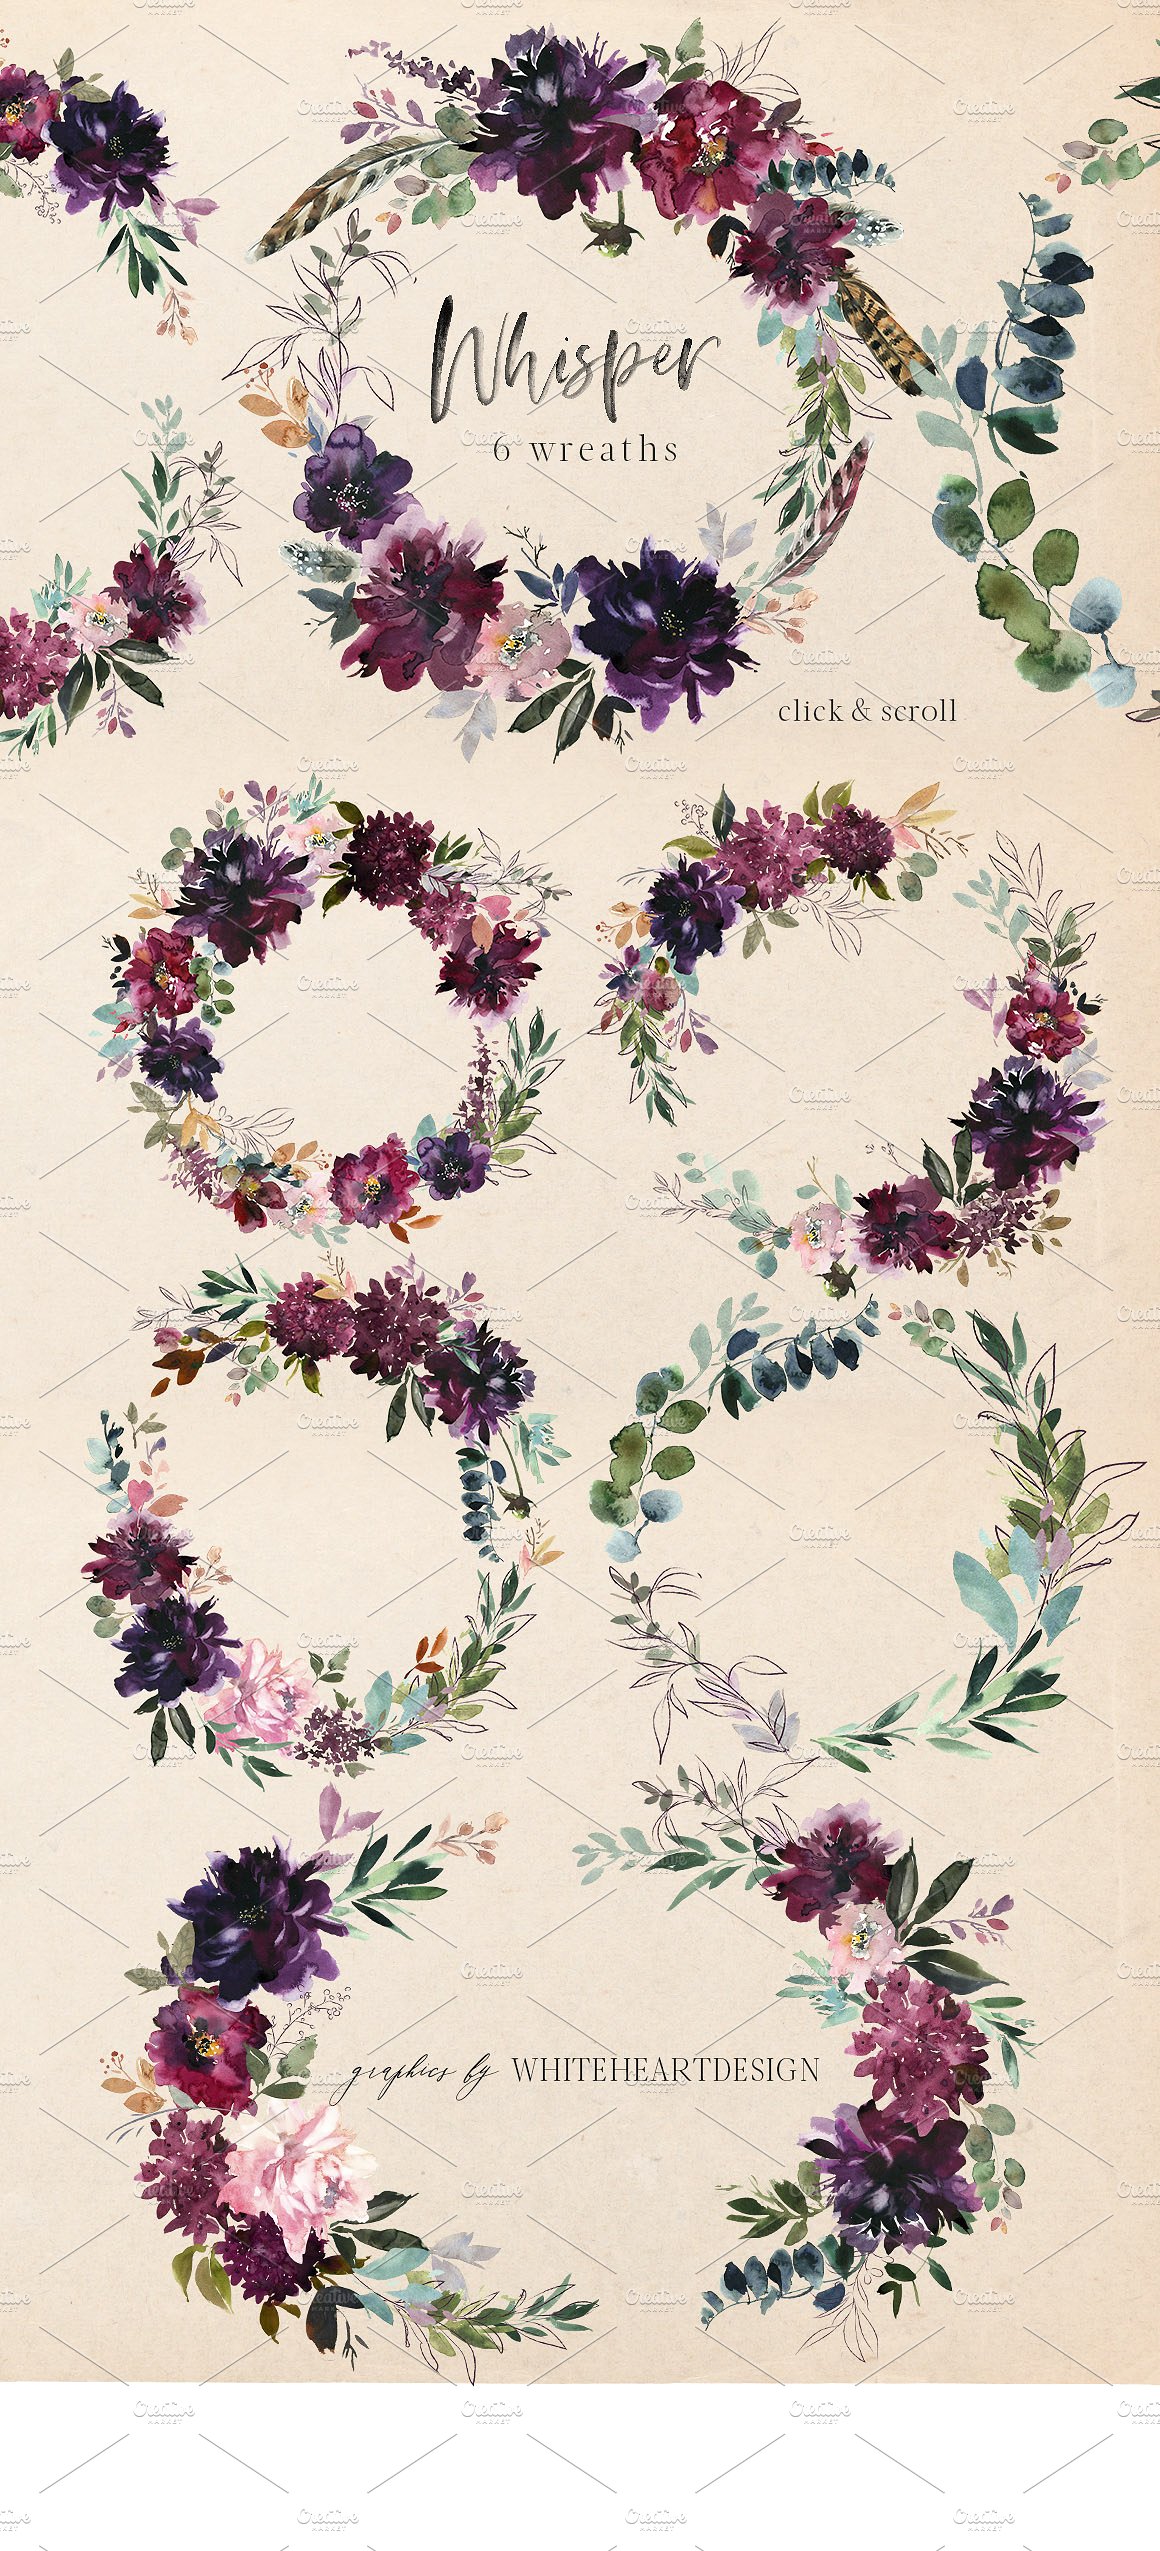 浪漫暗色调水彩花卉剪贴画 Whisper Watercolor Floral Clipart插图(2)